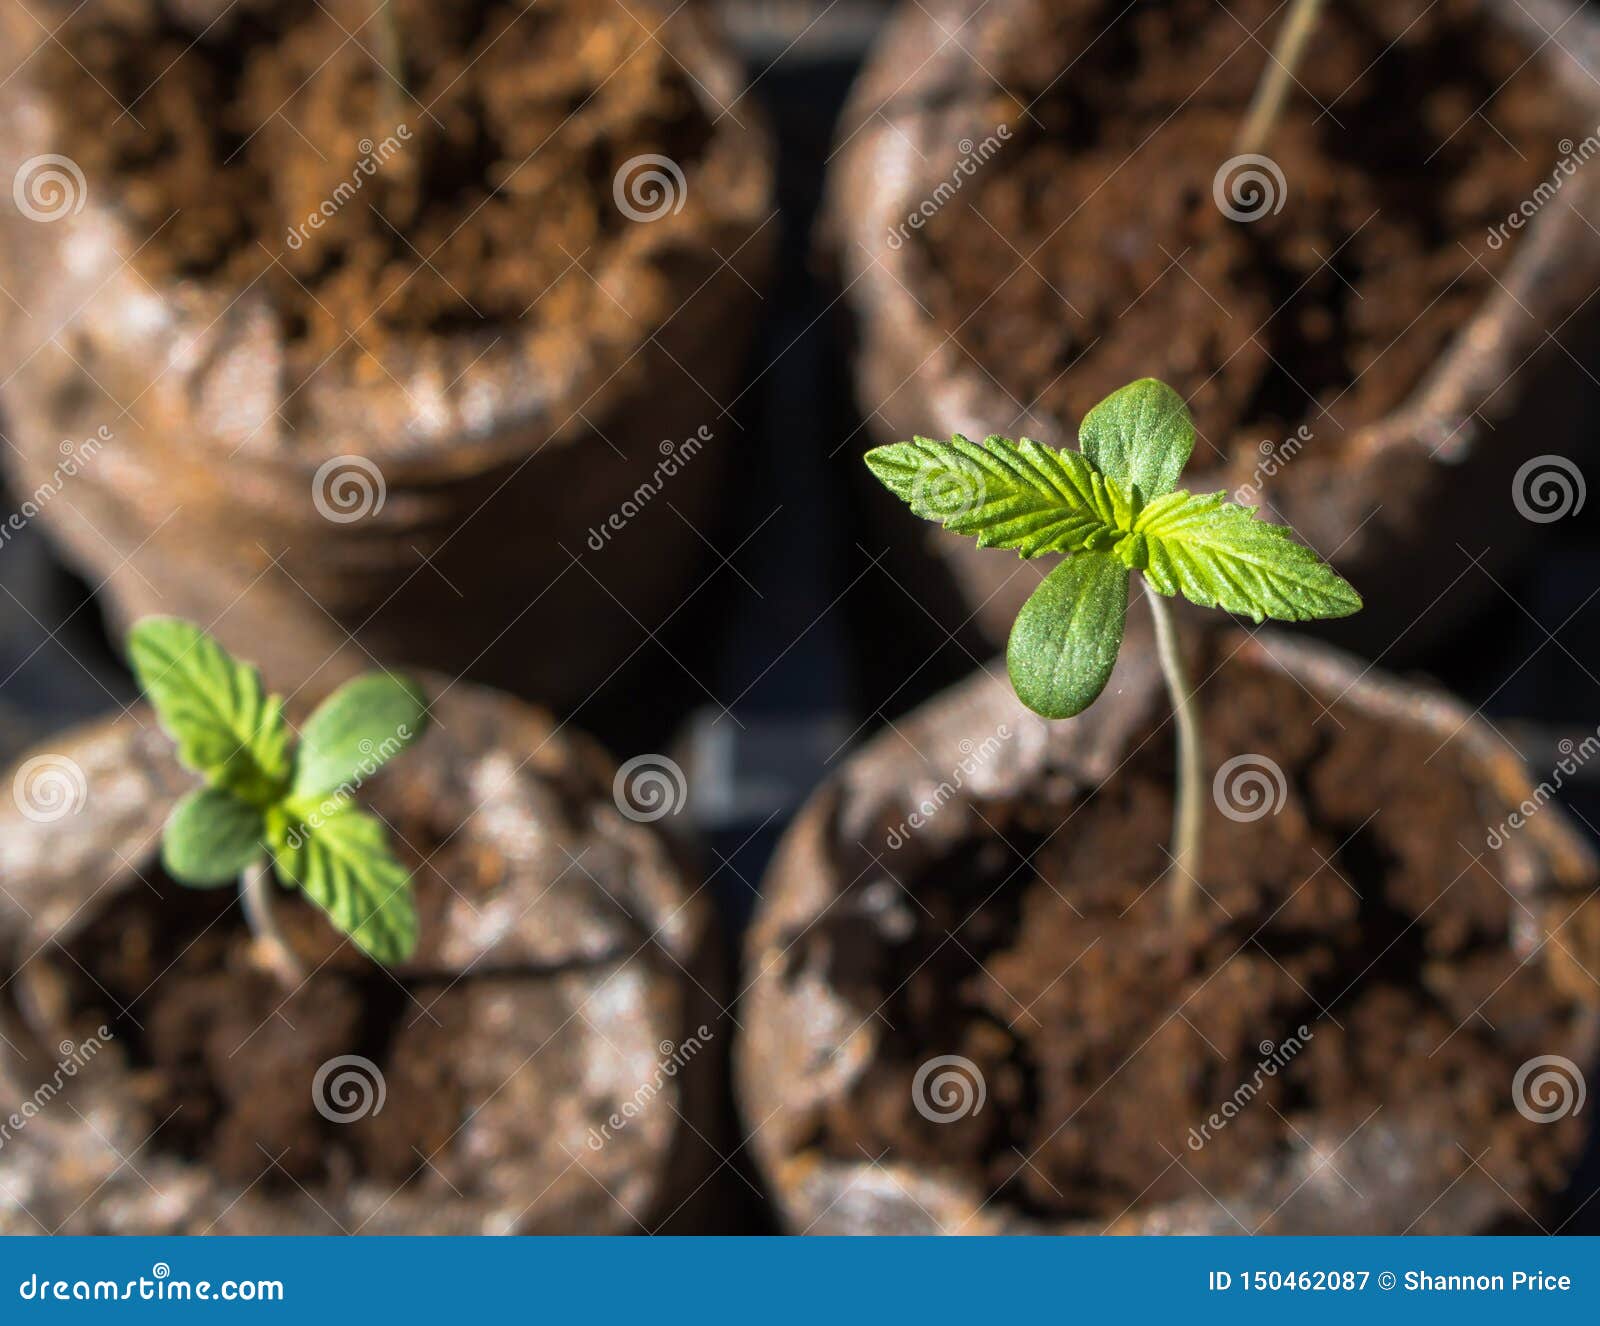 Фото саженцев конопли книга как вырасти марихуану